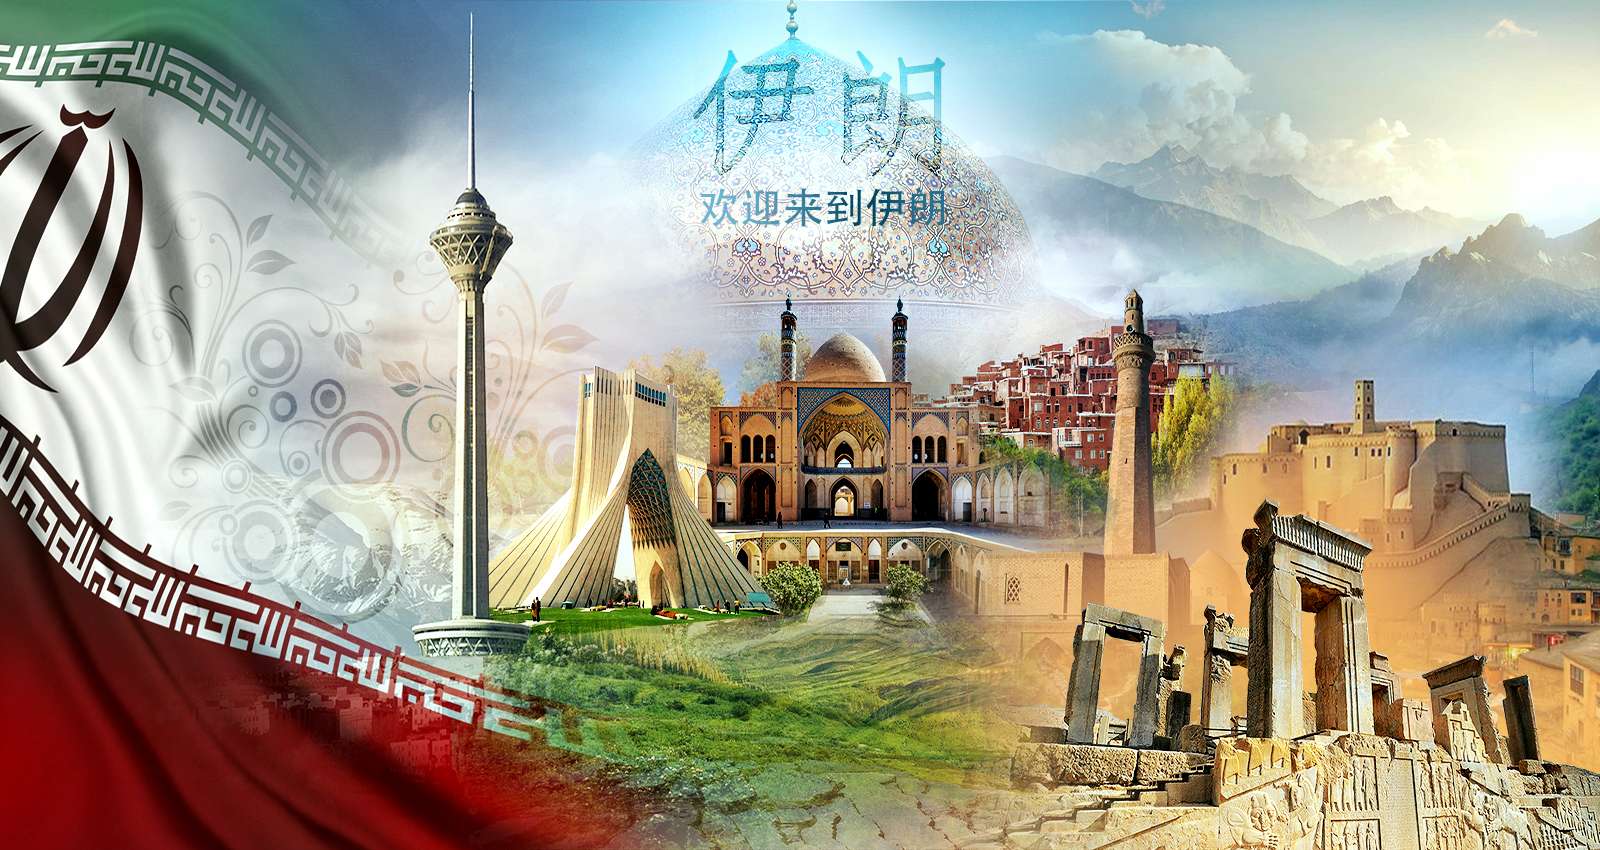 Iran Travel Agency_Iran_Chineze